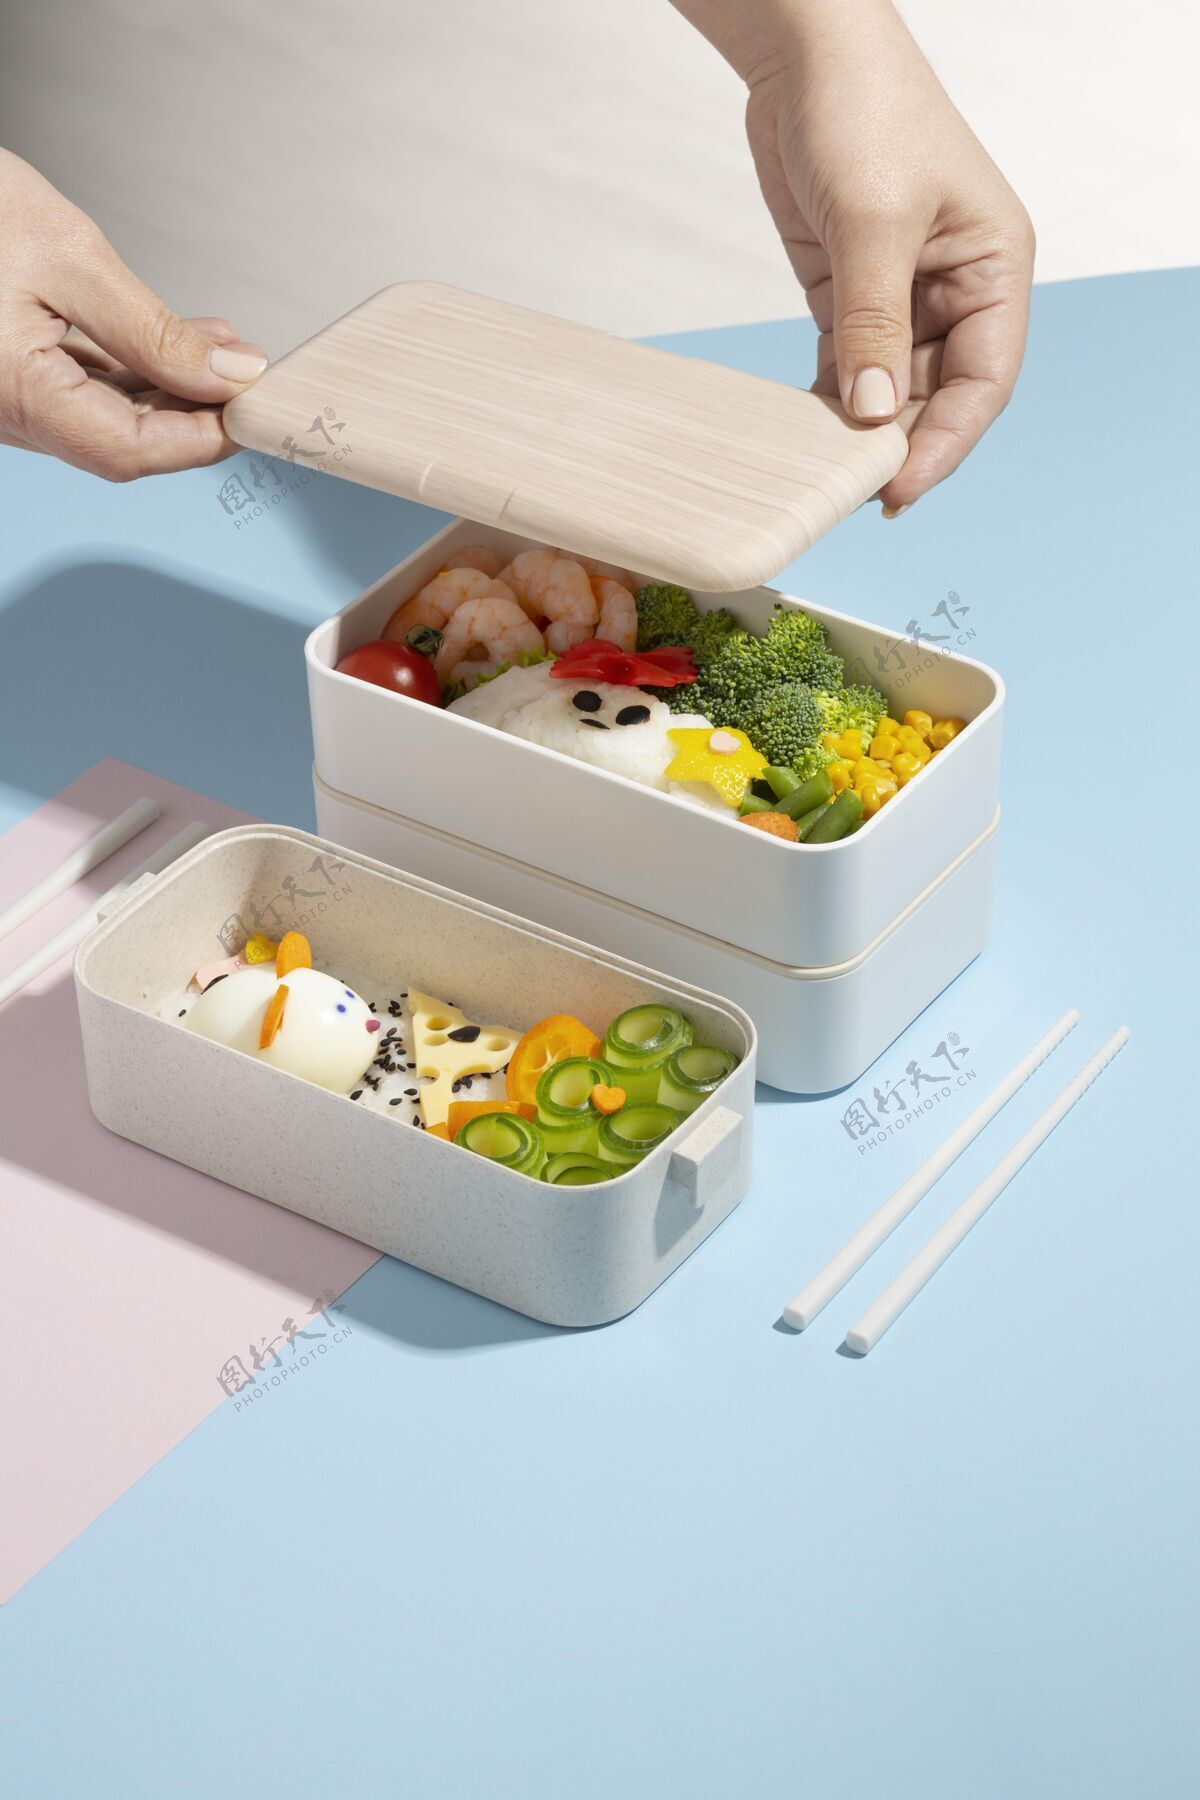 分类日本便当盒安排容器组成午餐